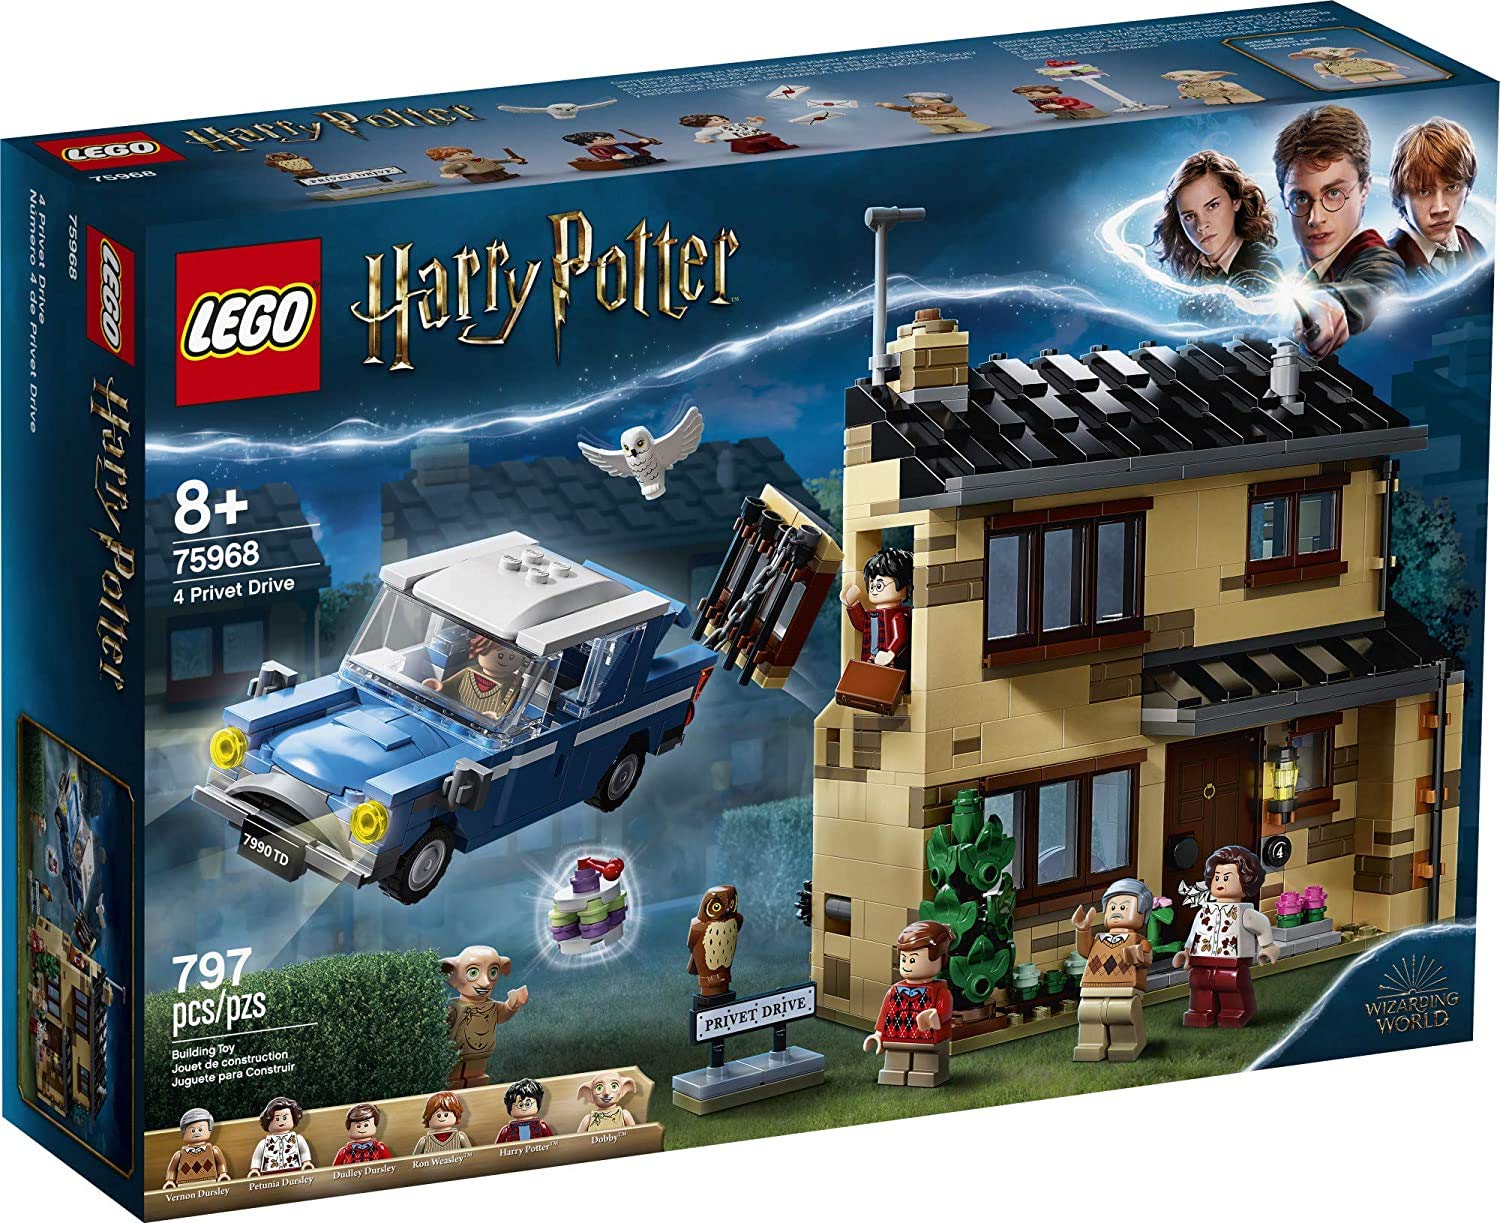  LEGO ハリー・ポッター 4 イボタノキドライブ 75968 ハウスとフォード・アングリア 空飛ぶ車のおもちゃ、ウィザーディング・ワールドの子供、女の子...